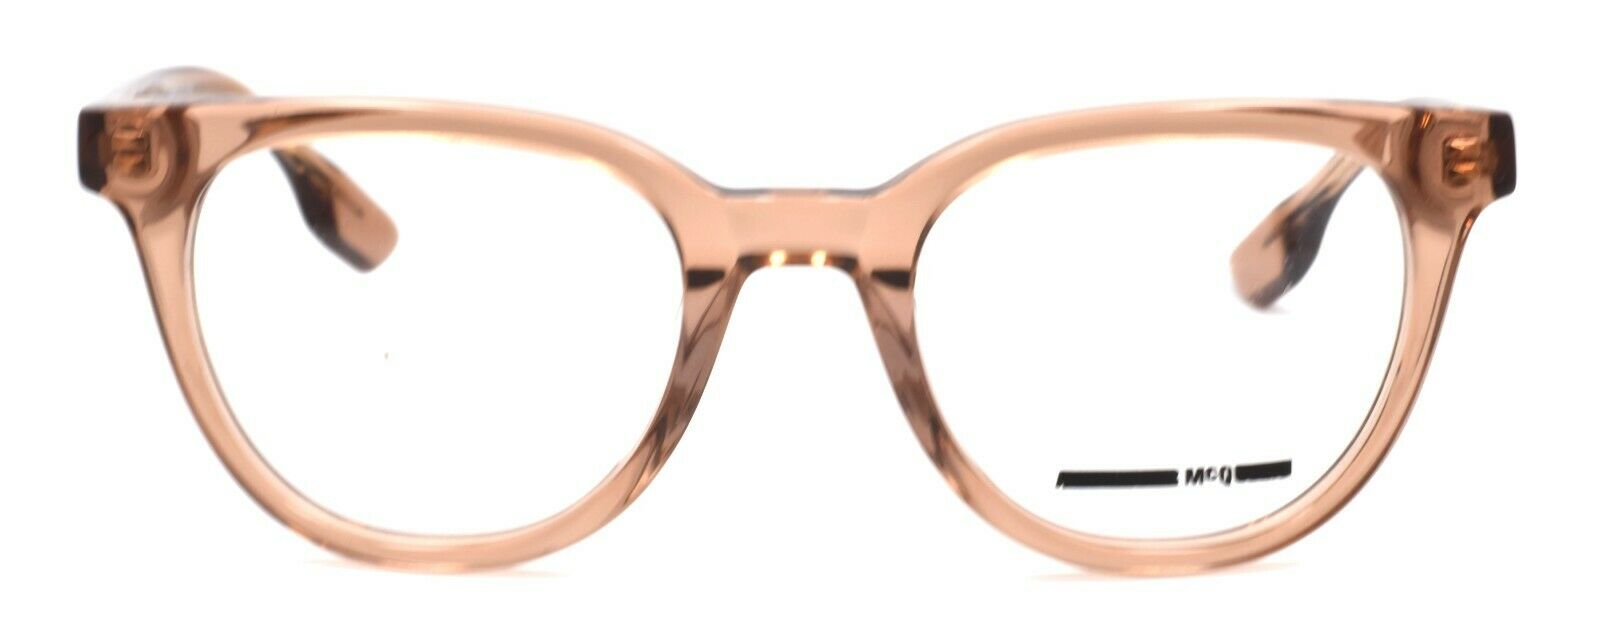 2-McQ Alexander McQueen MQ0030O 004 Women's Eyeglasses Frames 49-21-140 Pink-889652011370-IKSpecs